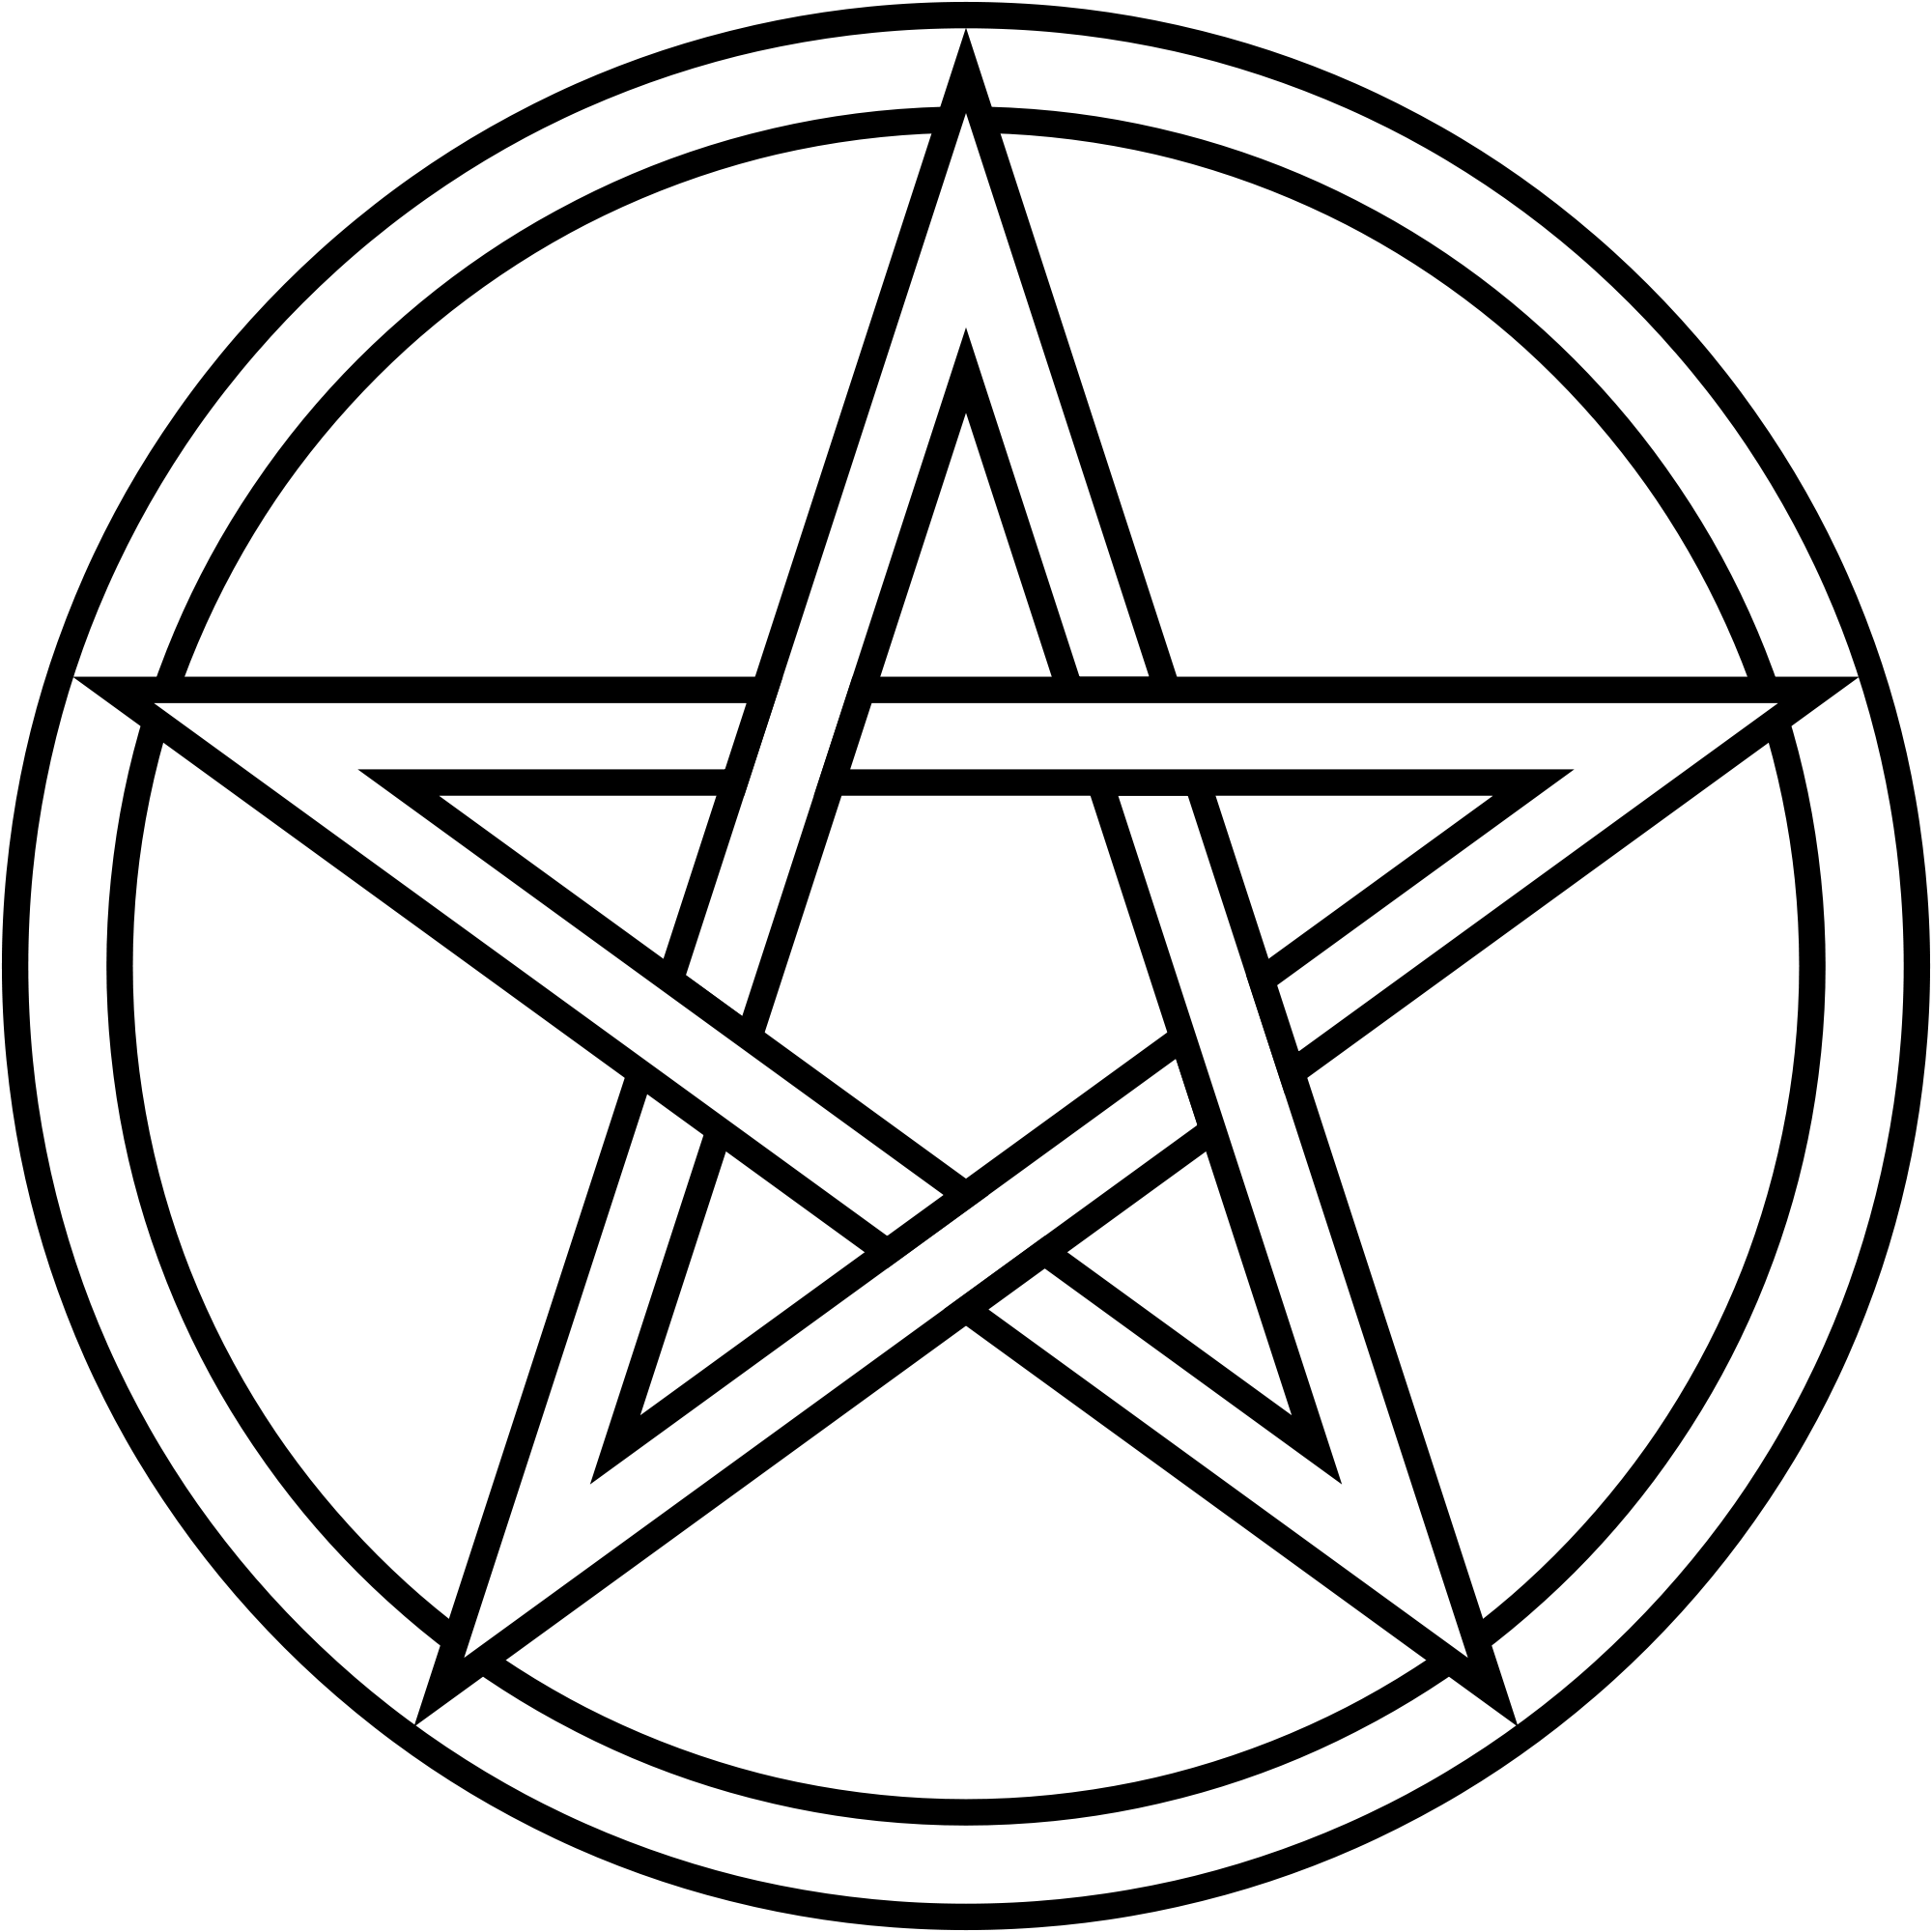 Звезда пентаклей. Пентакль пятиконечная звезда. Викканская пентаграмма. Символ сатаны звезда пятиконечная звезда. Пифагорейская звезда пентаграмма.